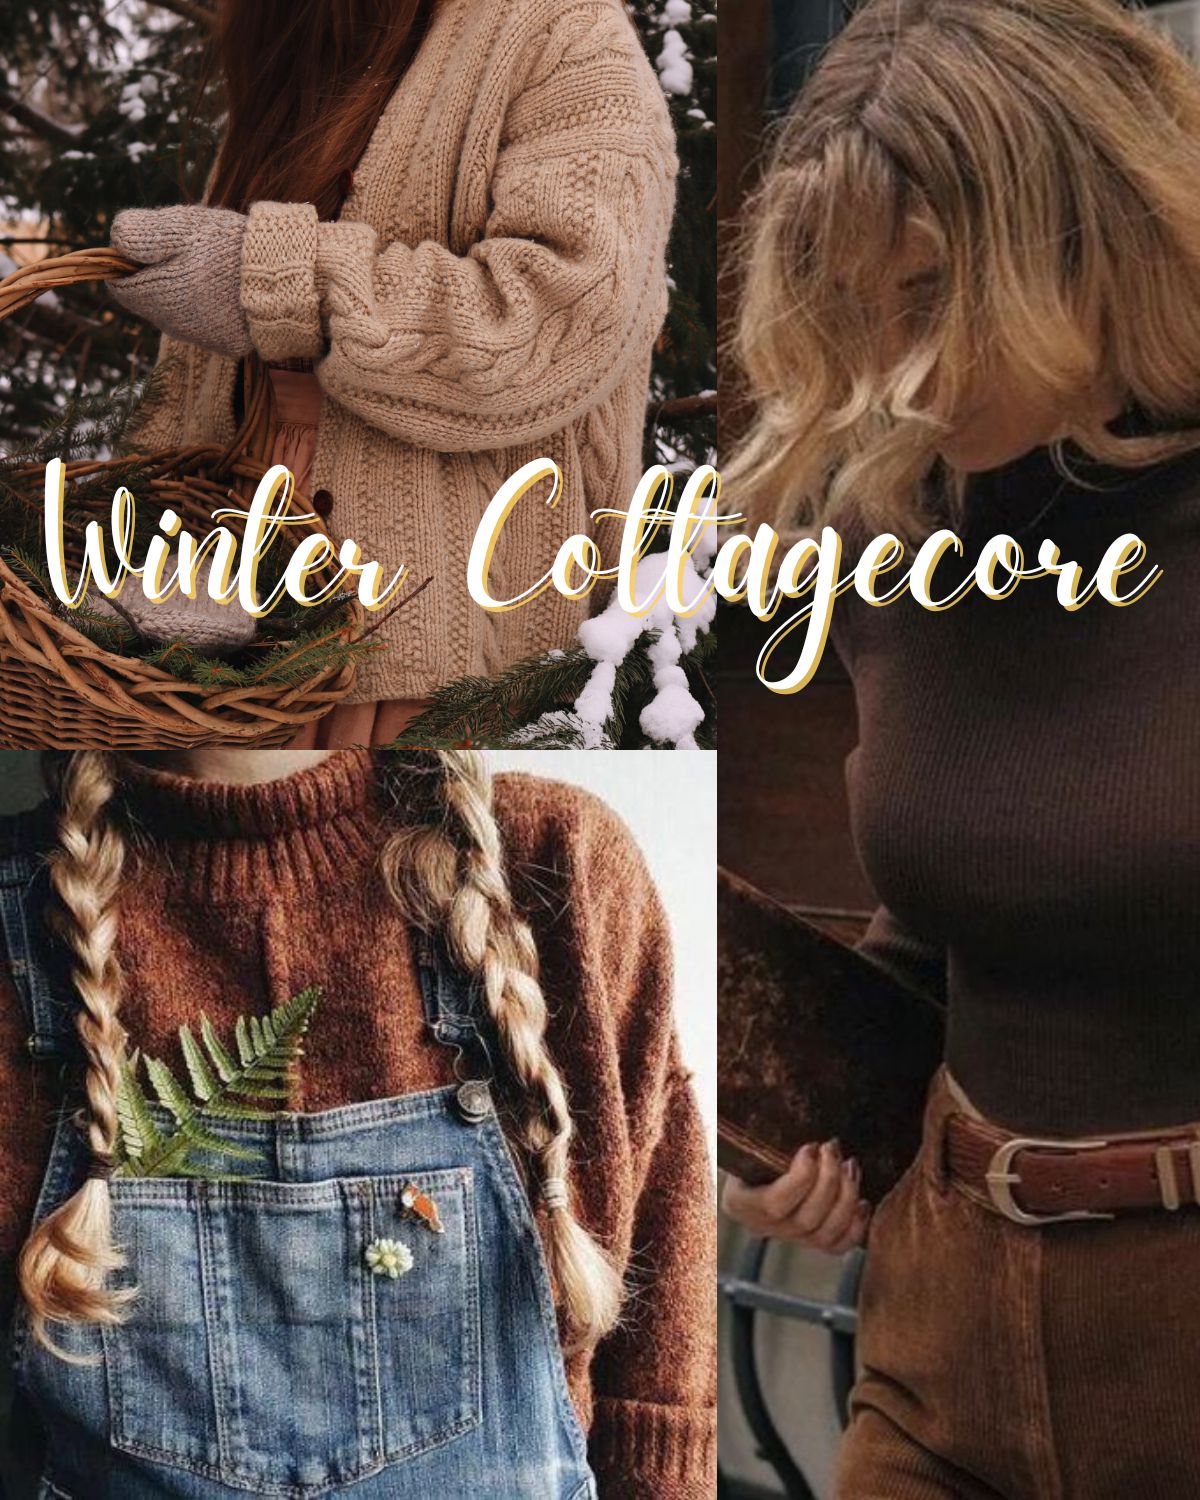 Three girls in rural winter cottagecore fashion